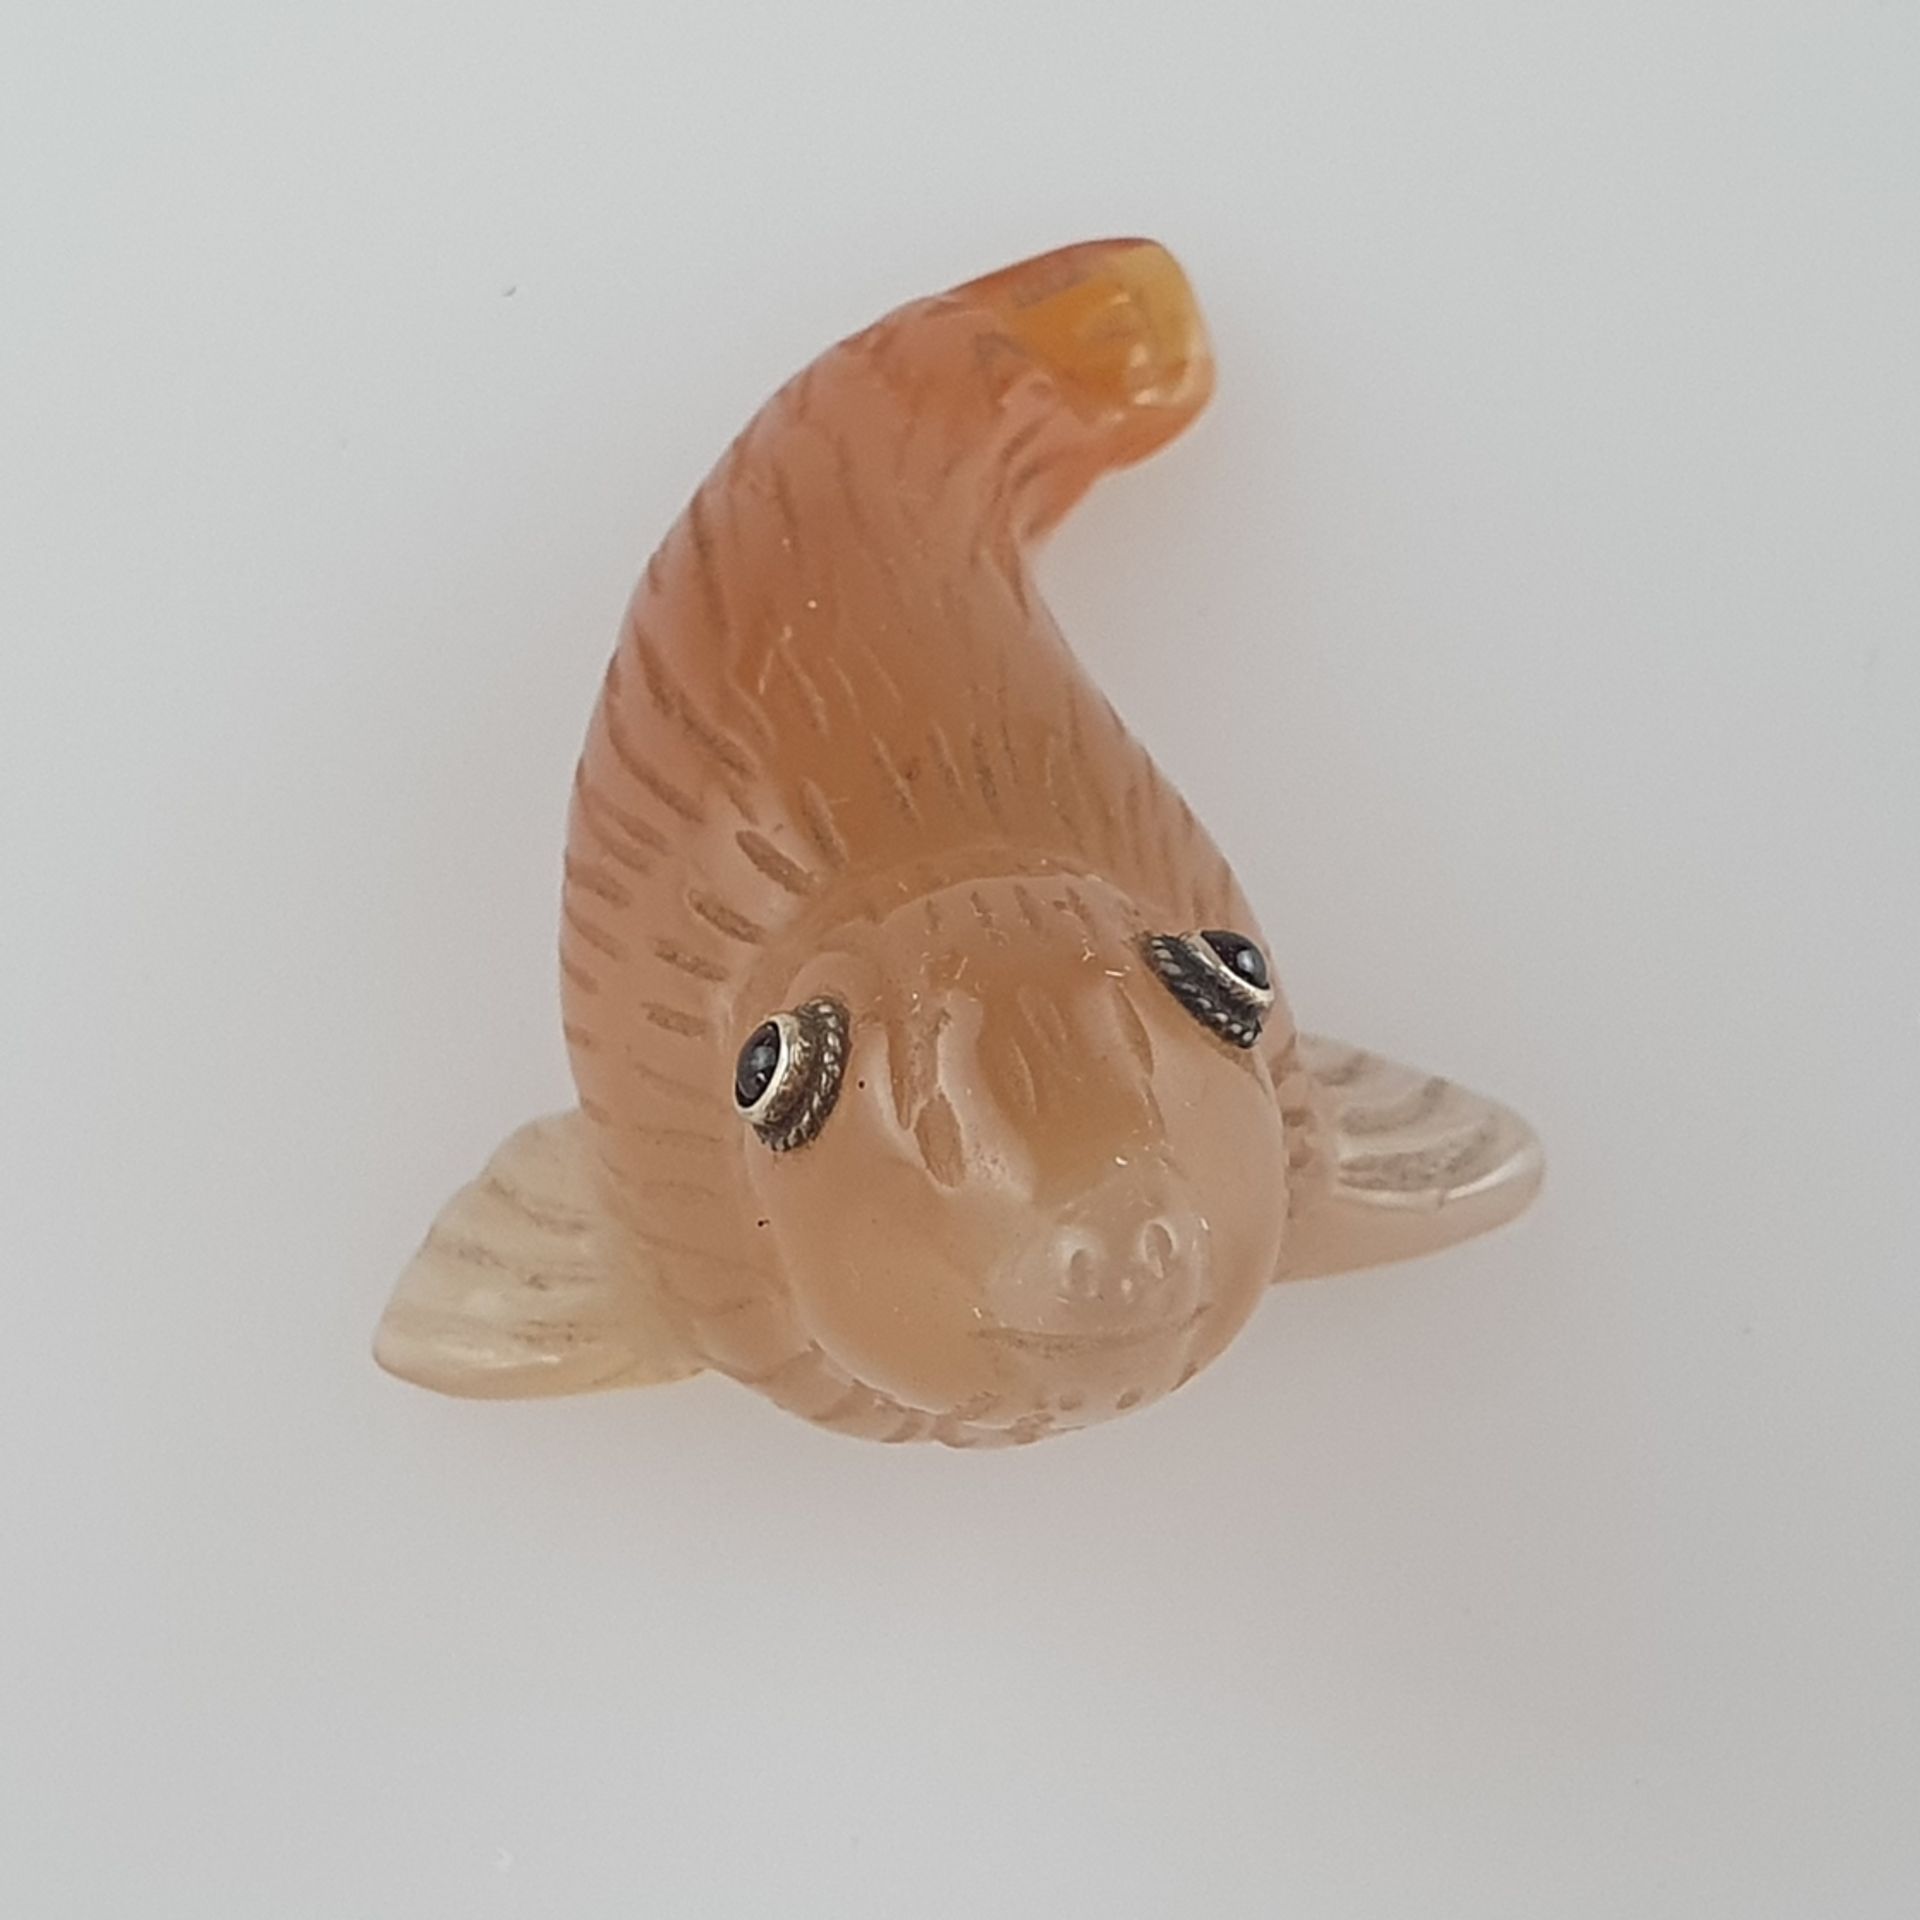 Miniatur-Tierfigur in der Art von Fabergé - vollrunde Achatschnitzerei in Gestalt eines Seehundes,  - Bild 2 aus 8